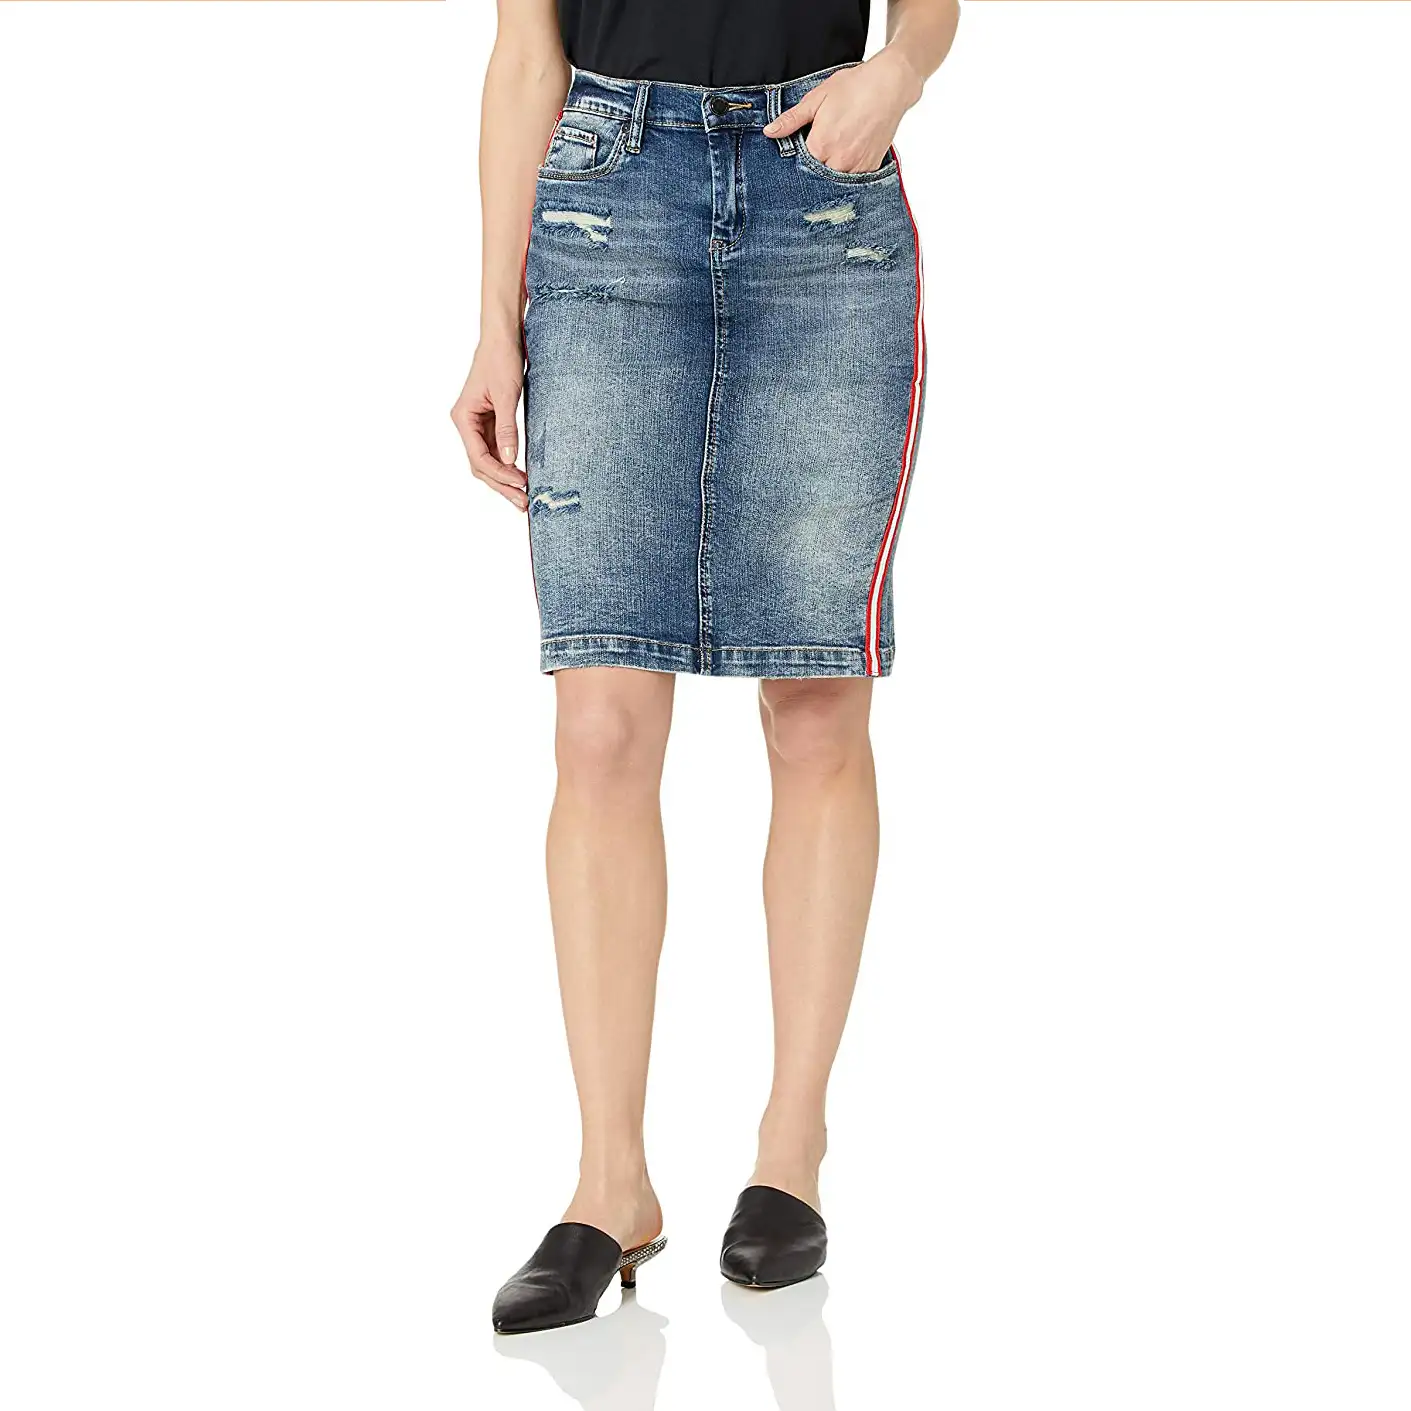 Custom style rough Short Pencil Denim Jeans Skirt for Women